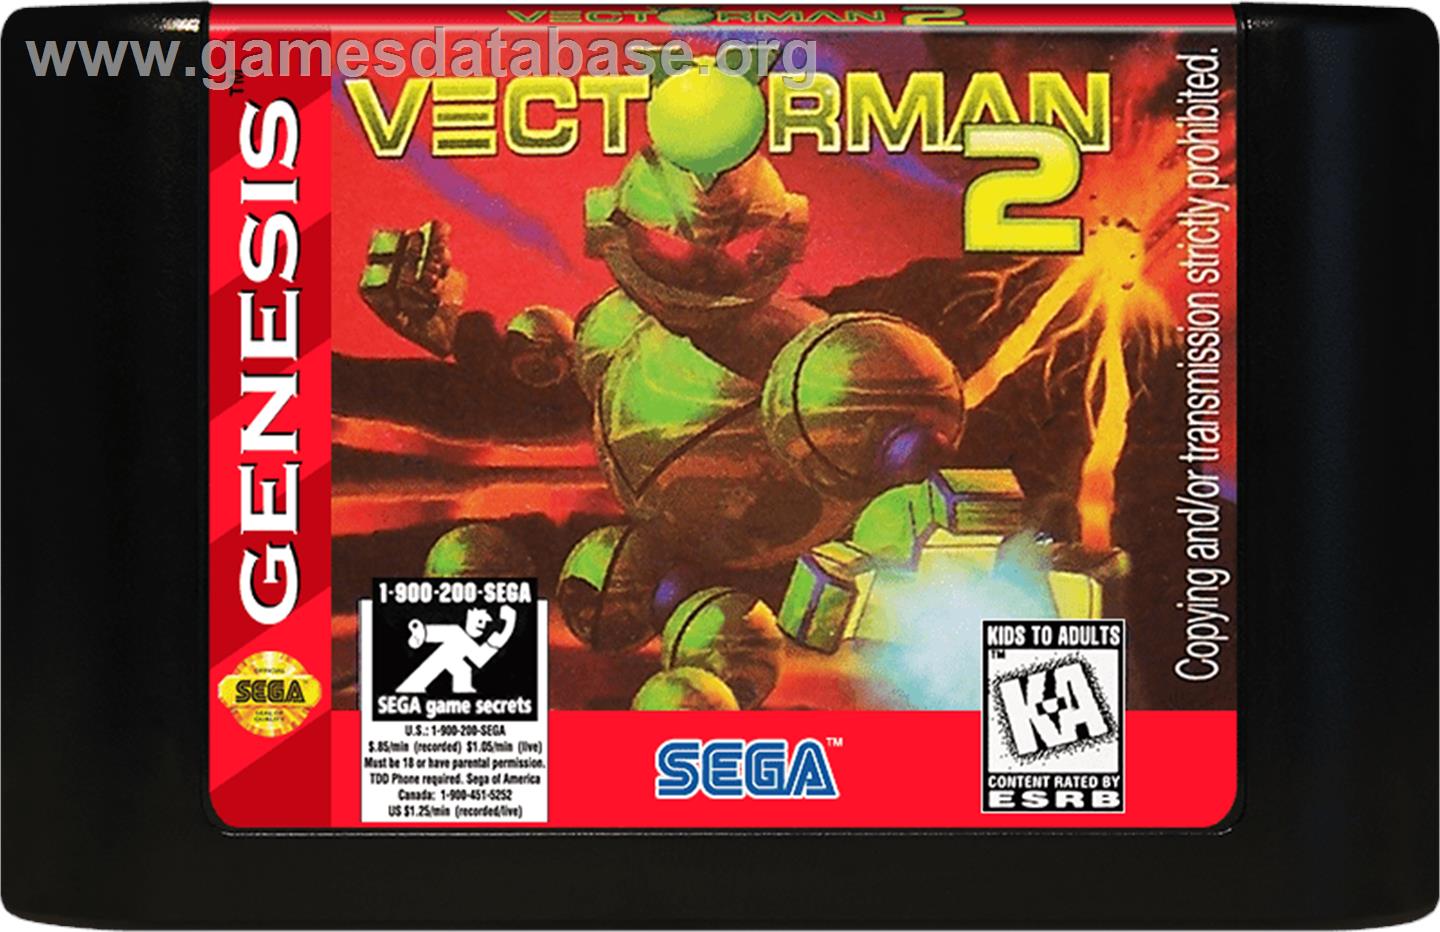 Vectorman 2 - Sega Genesis - Artwork - Cartridge